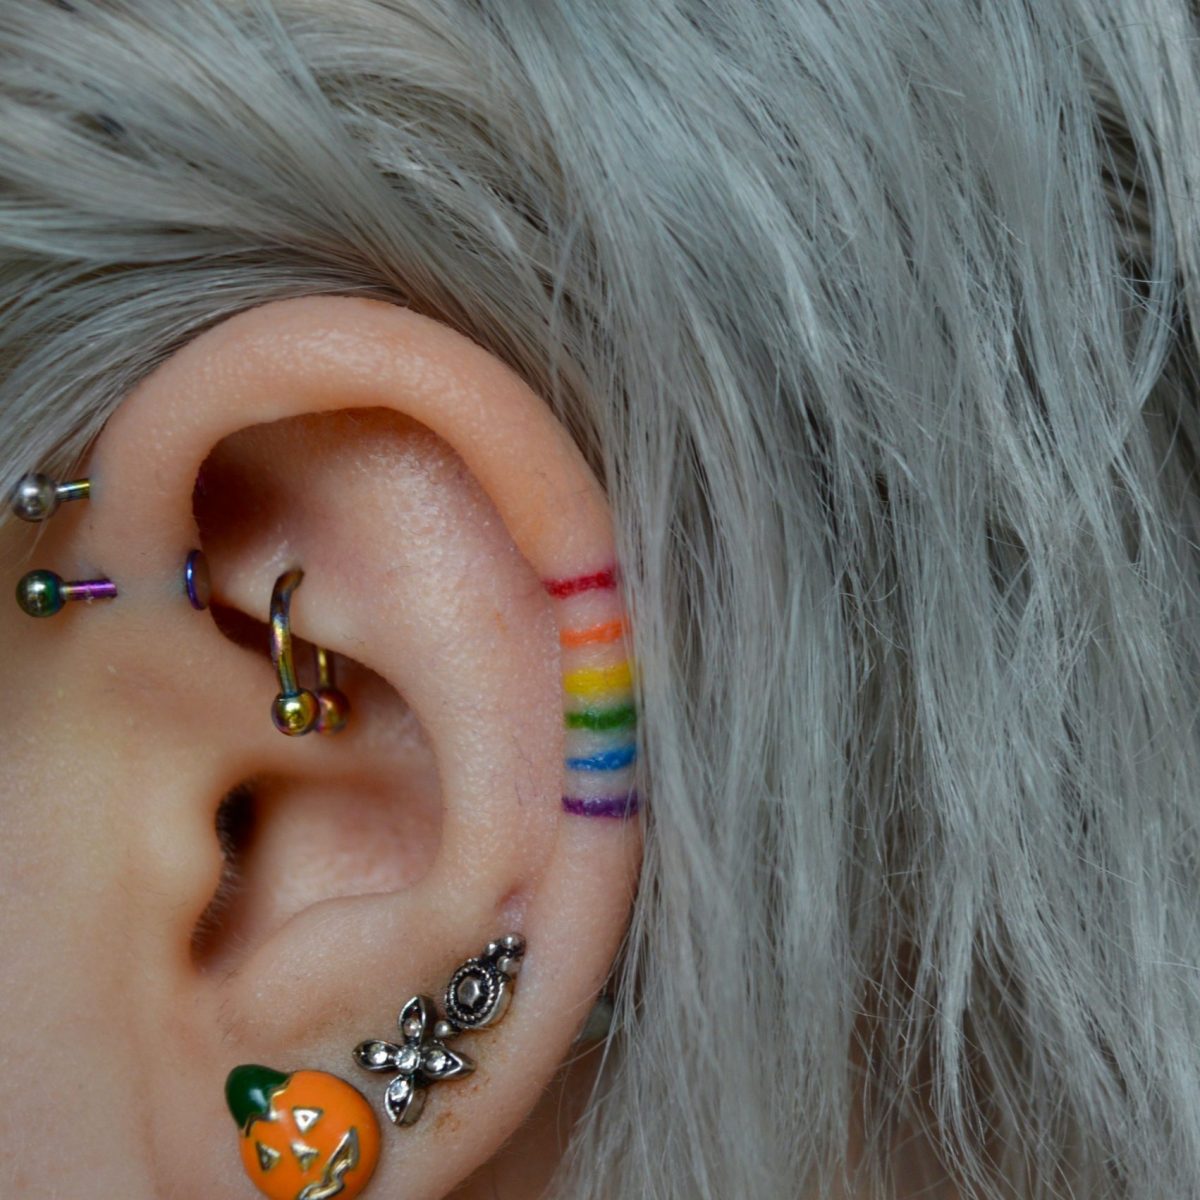 Rainbow ear tattoo by aaliyahdeaconx